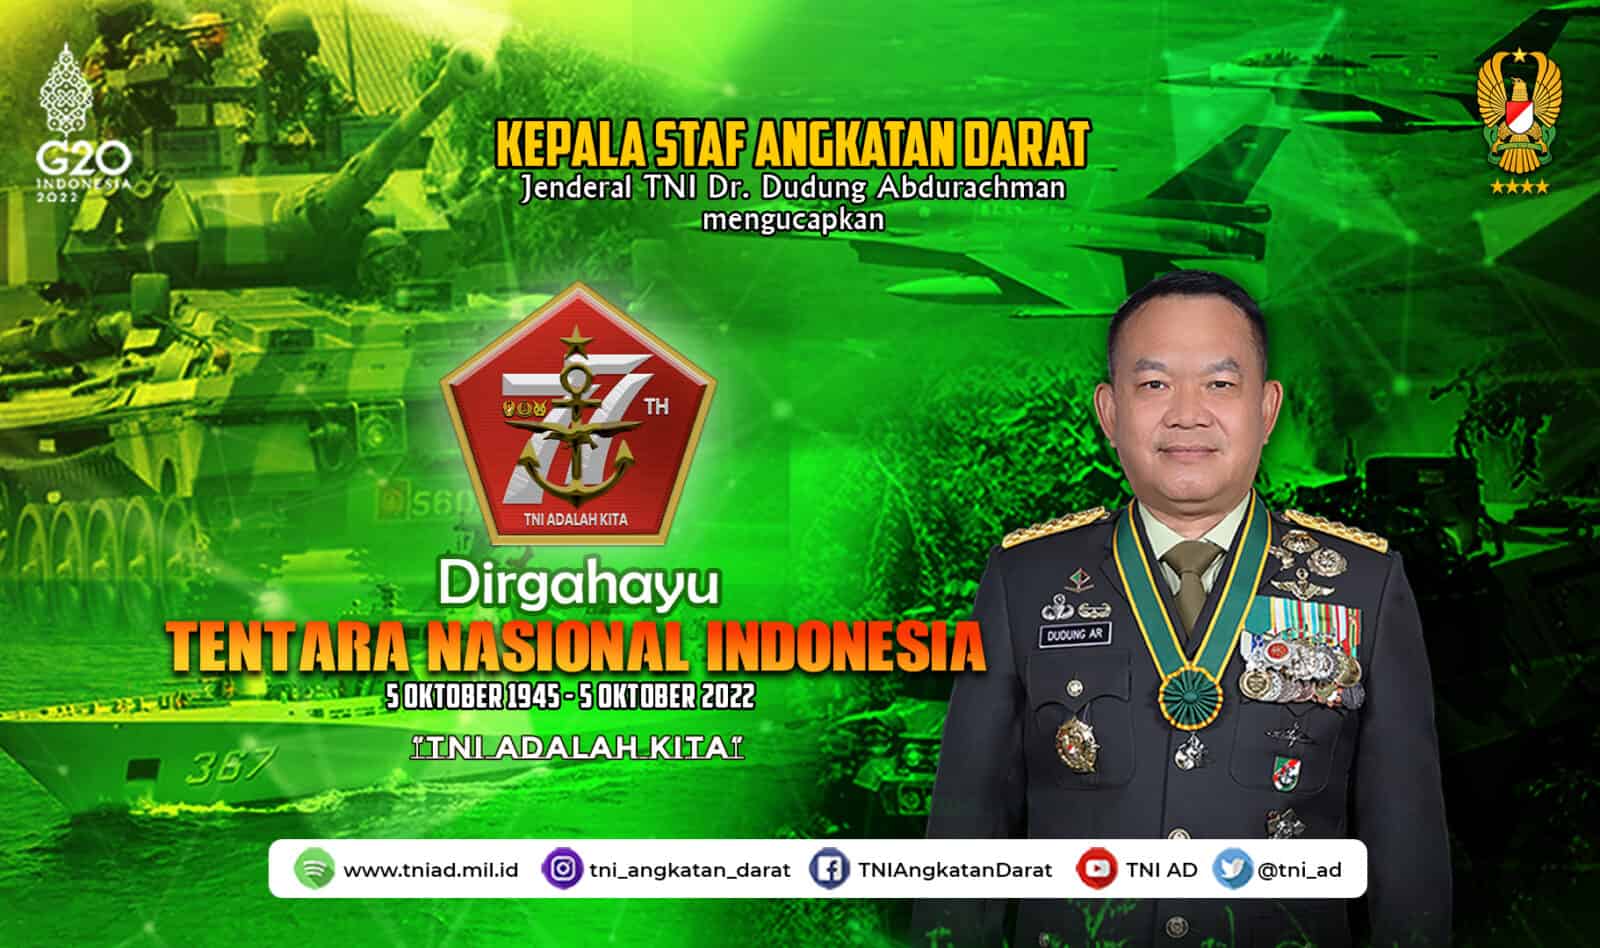 Dirgahayu Tentara Nasional Indonesia, 5 Oktober 1945 – 5 Oktober 2022 “TNI ADALAH KITA”